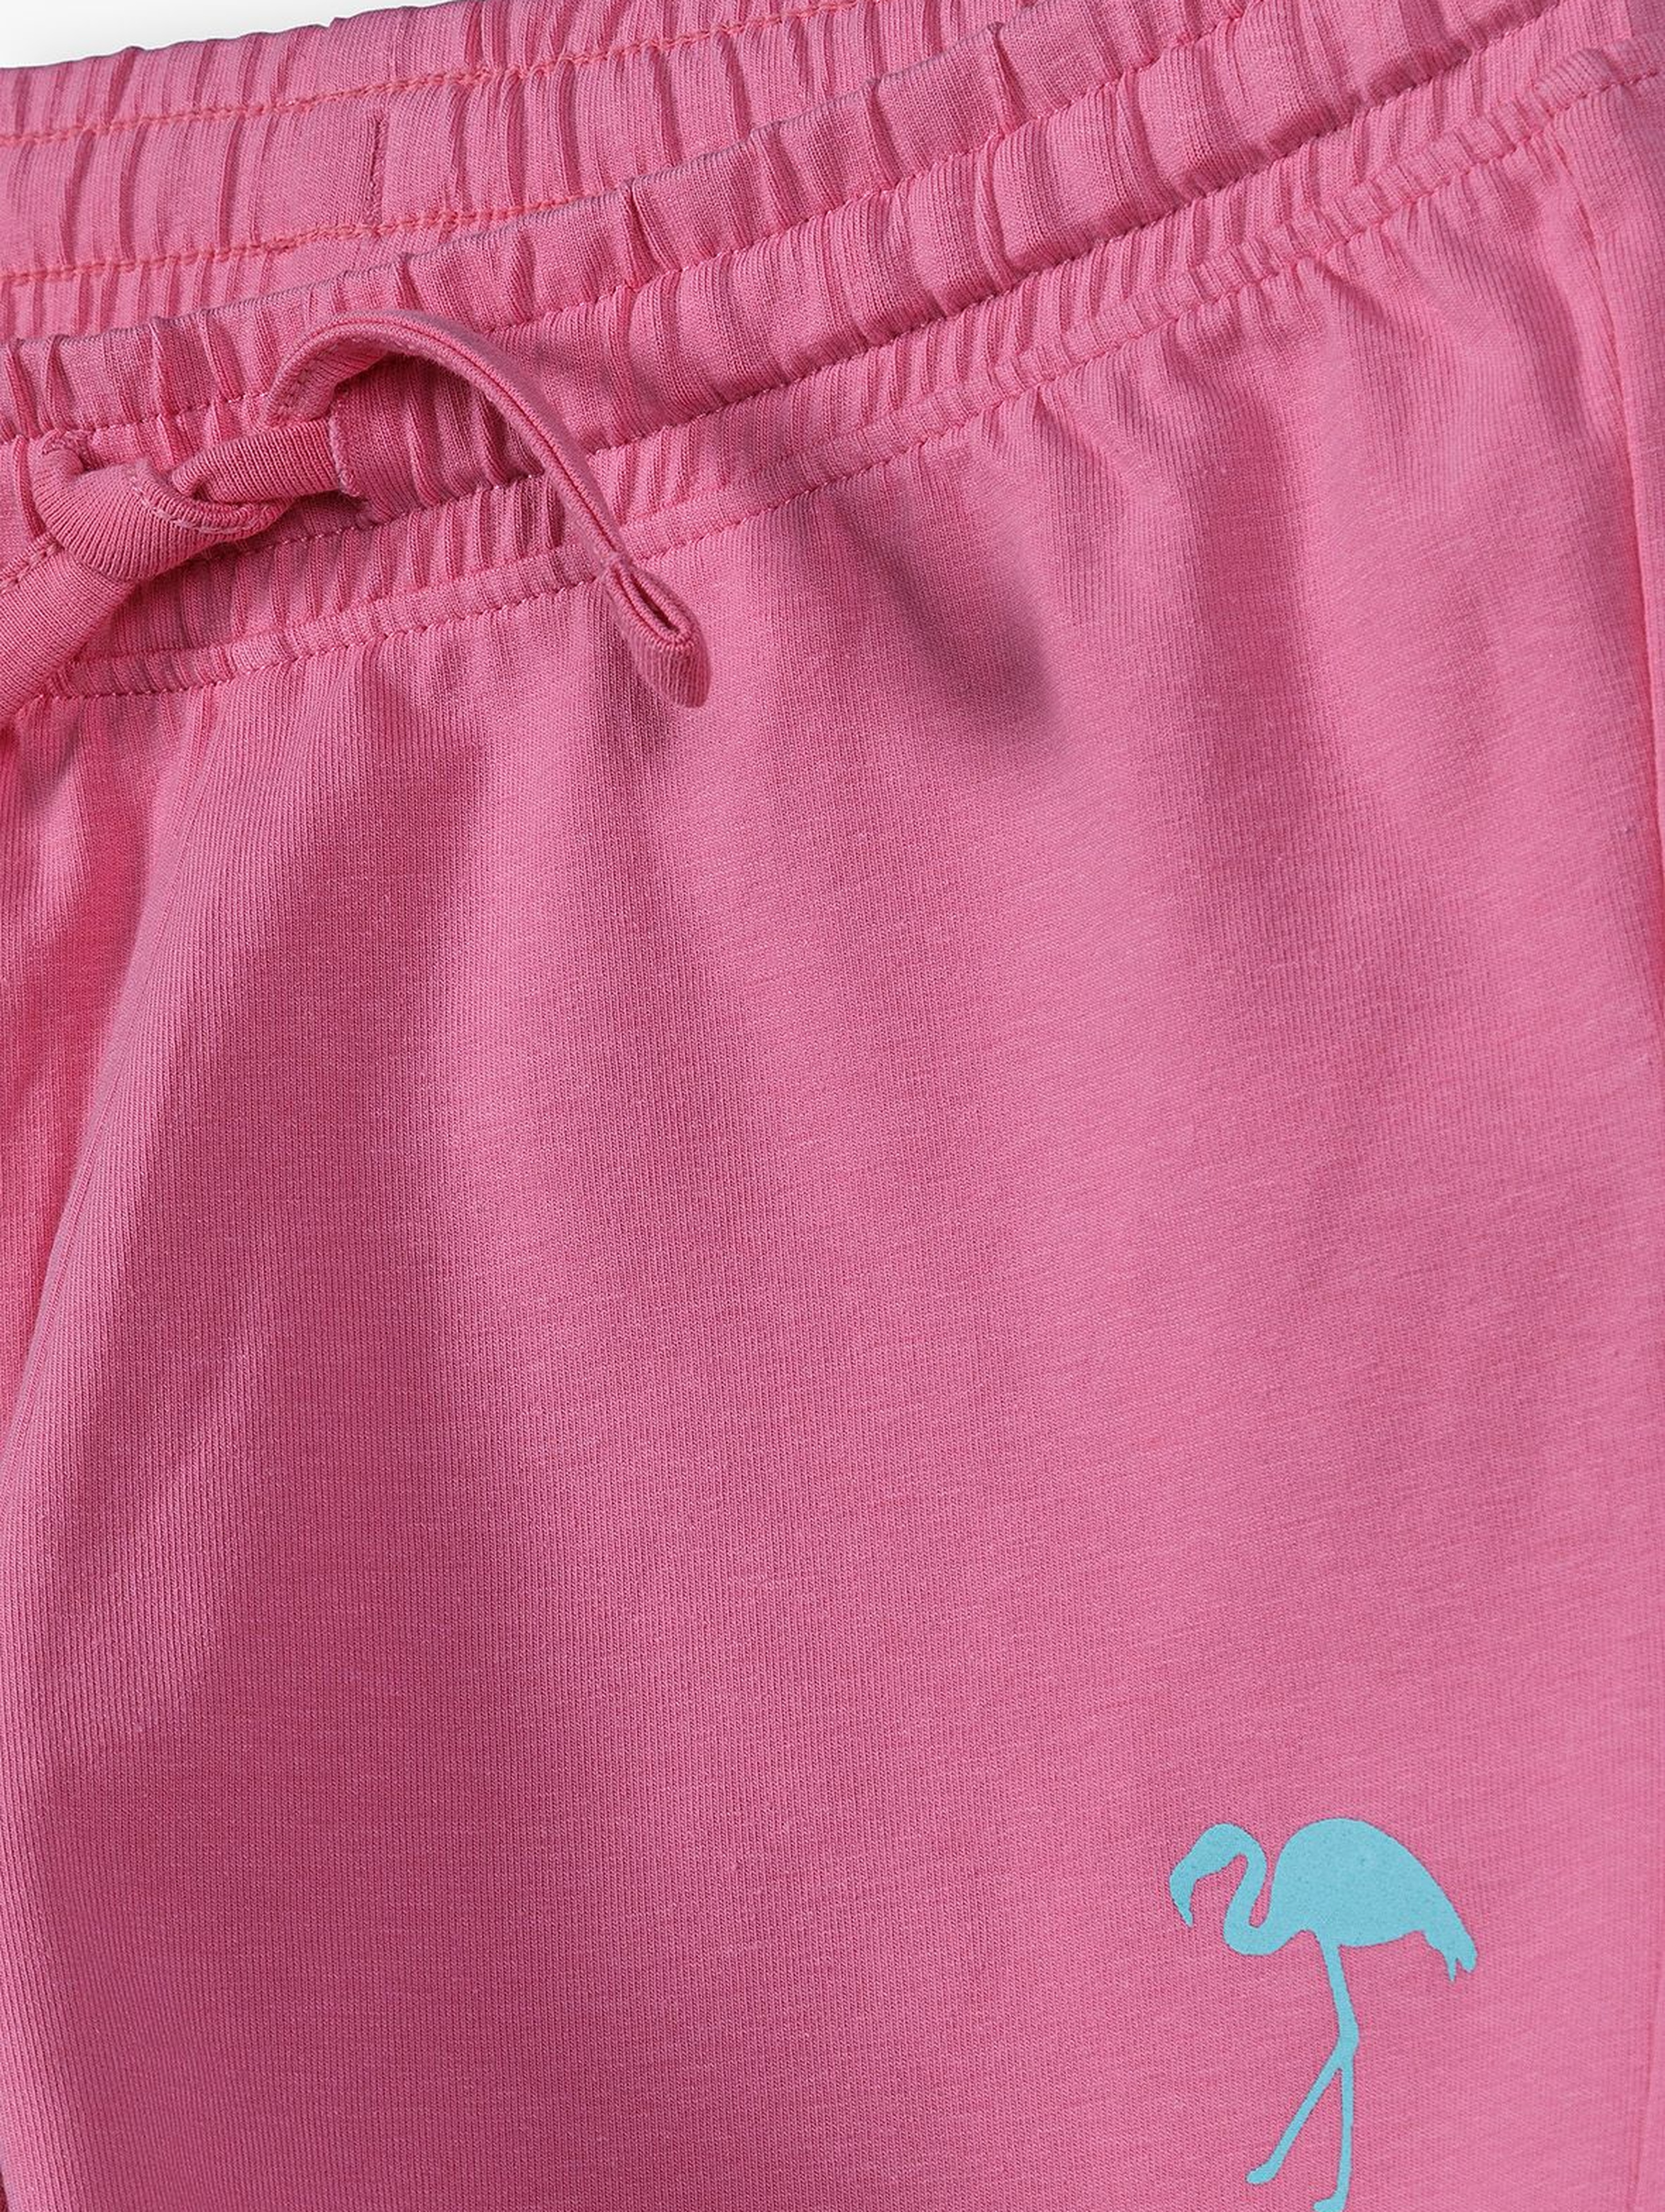 Dzianinowe szorty dla dziewczynki - różowe z flamingiem